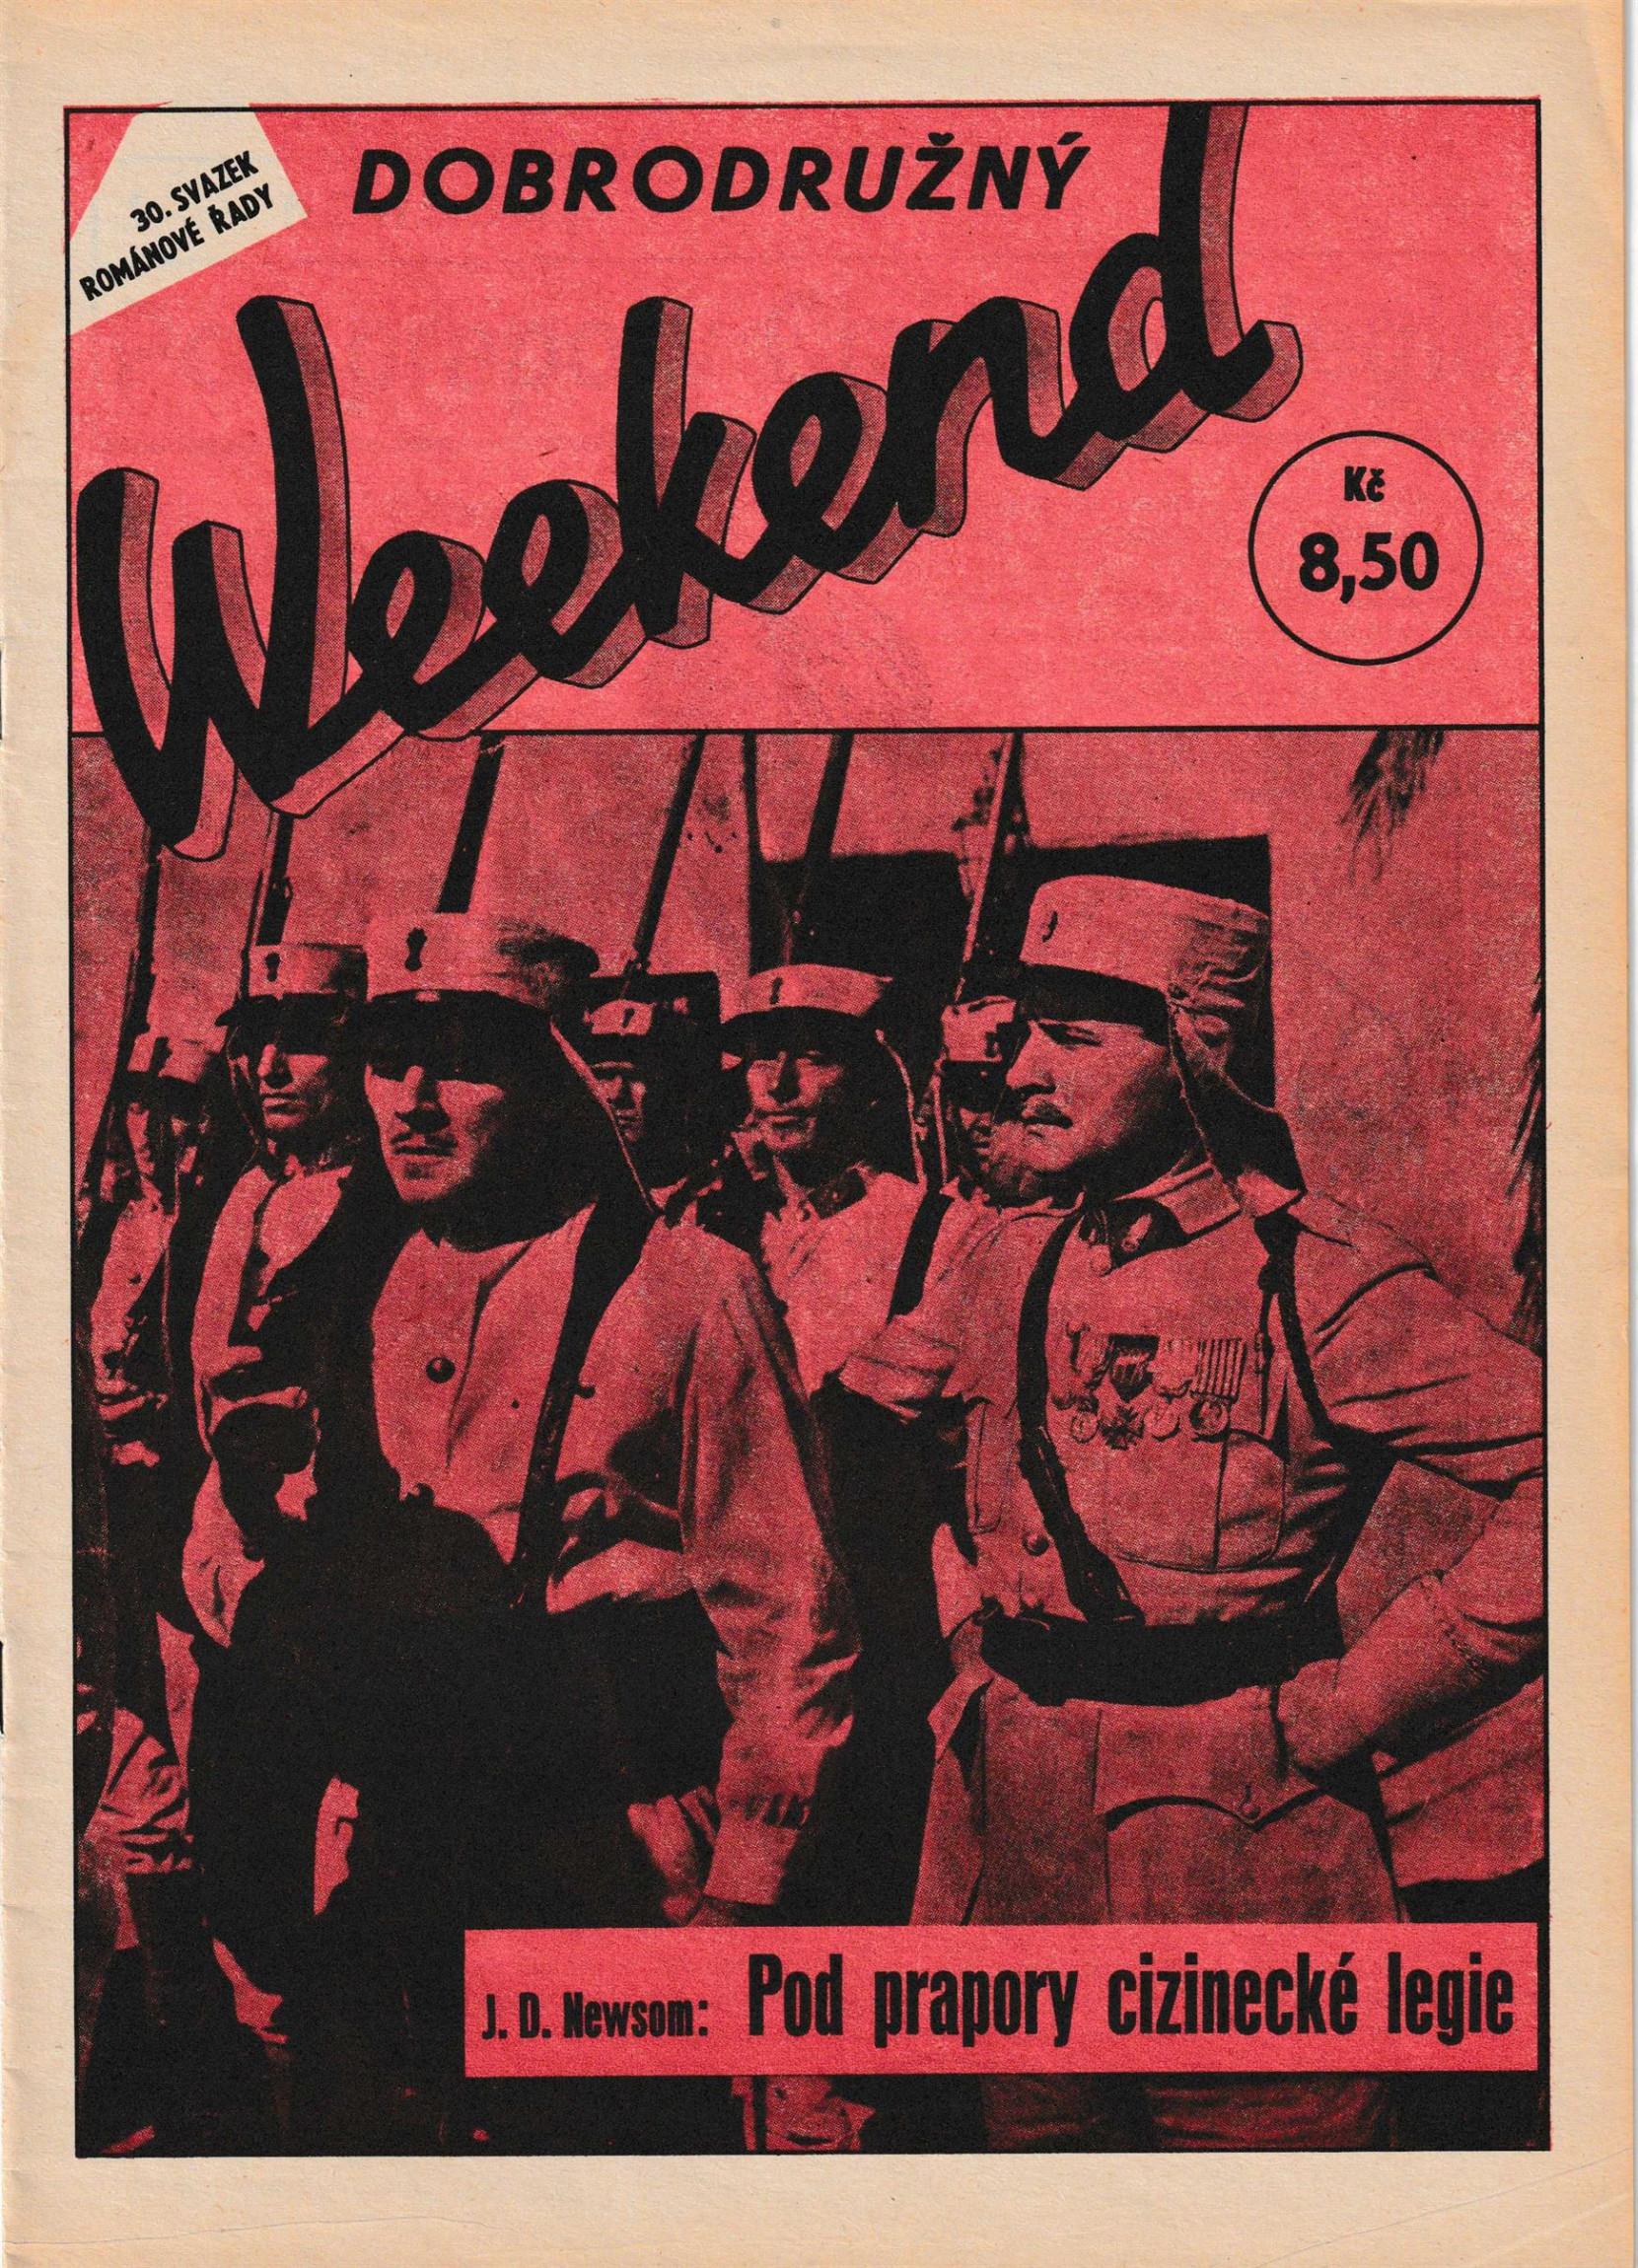 Dobroduzny Weekend Issue 30